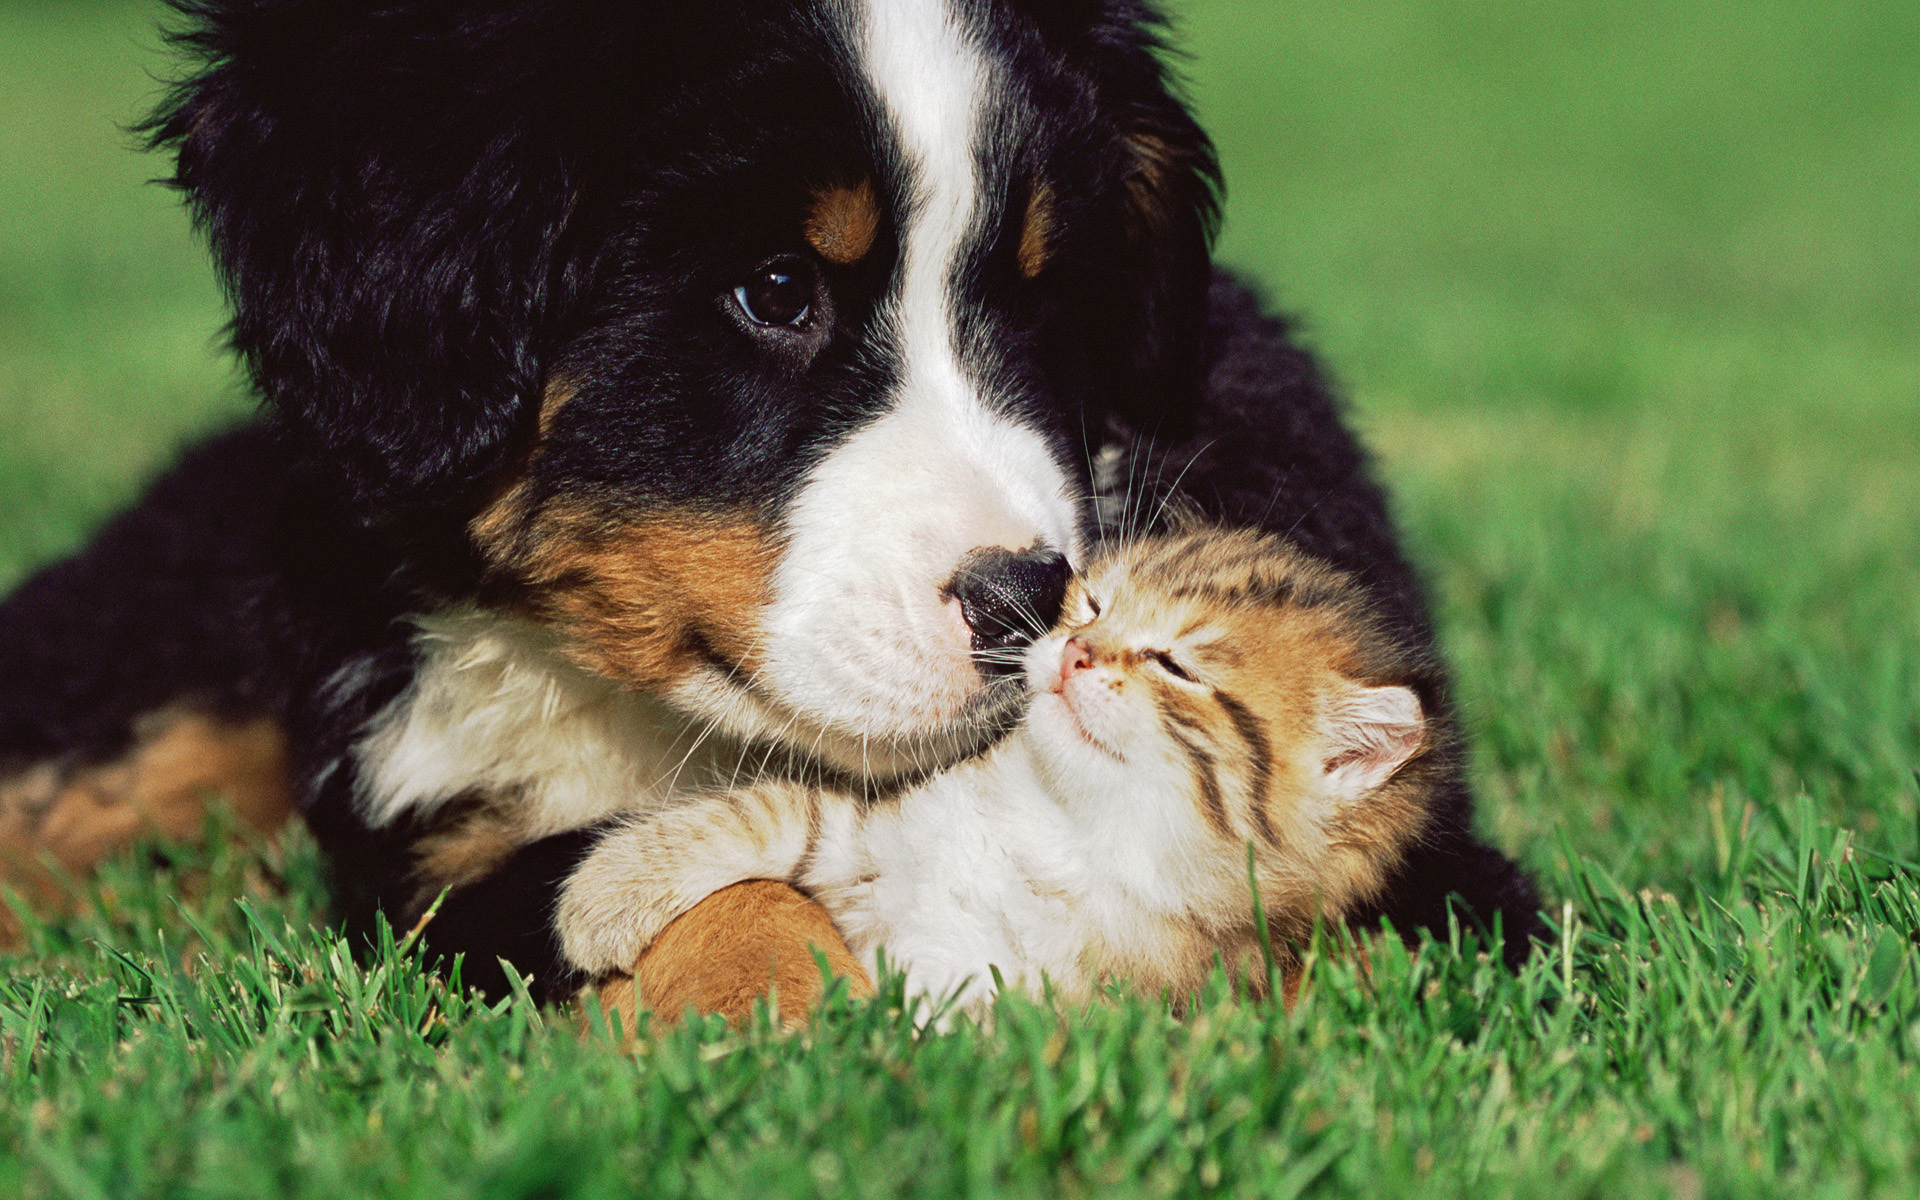 Дружба между собакой и котом